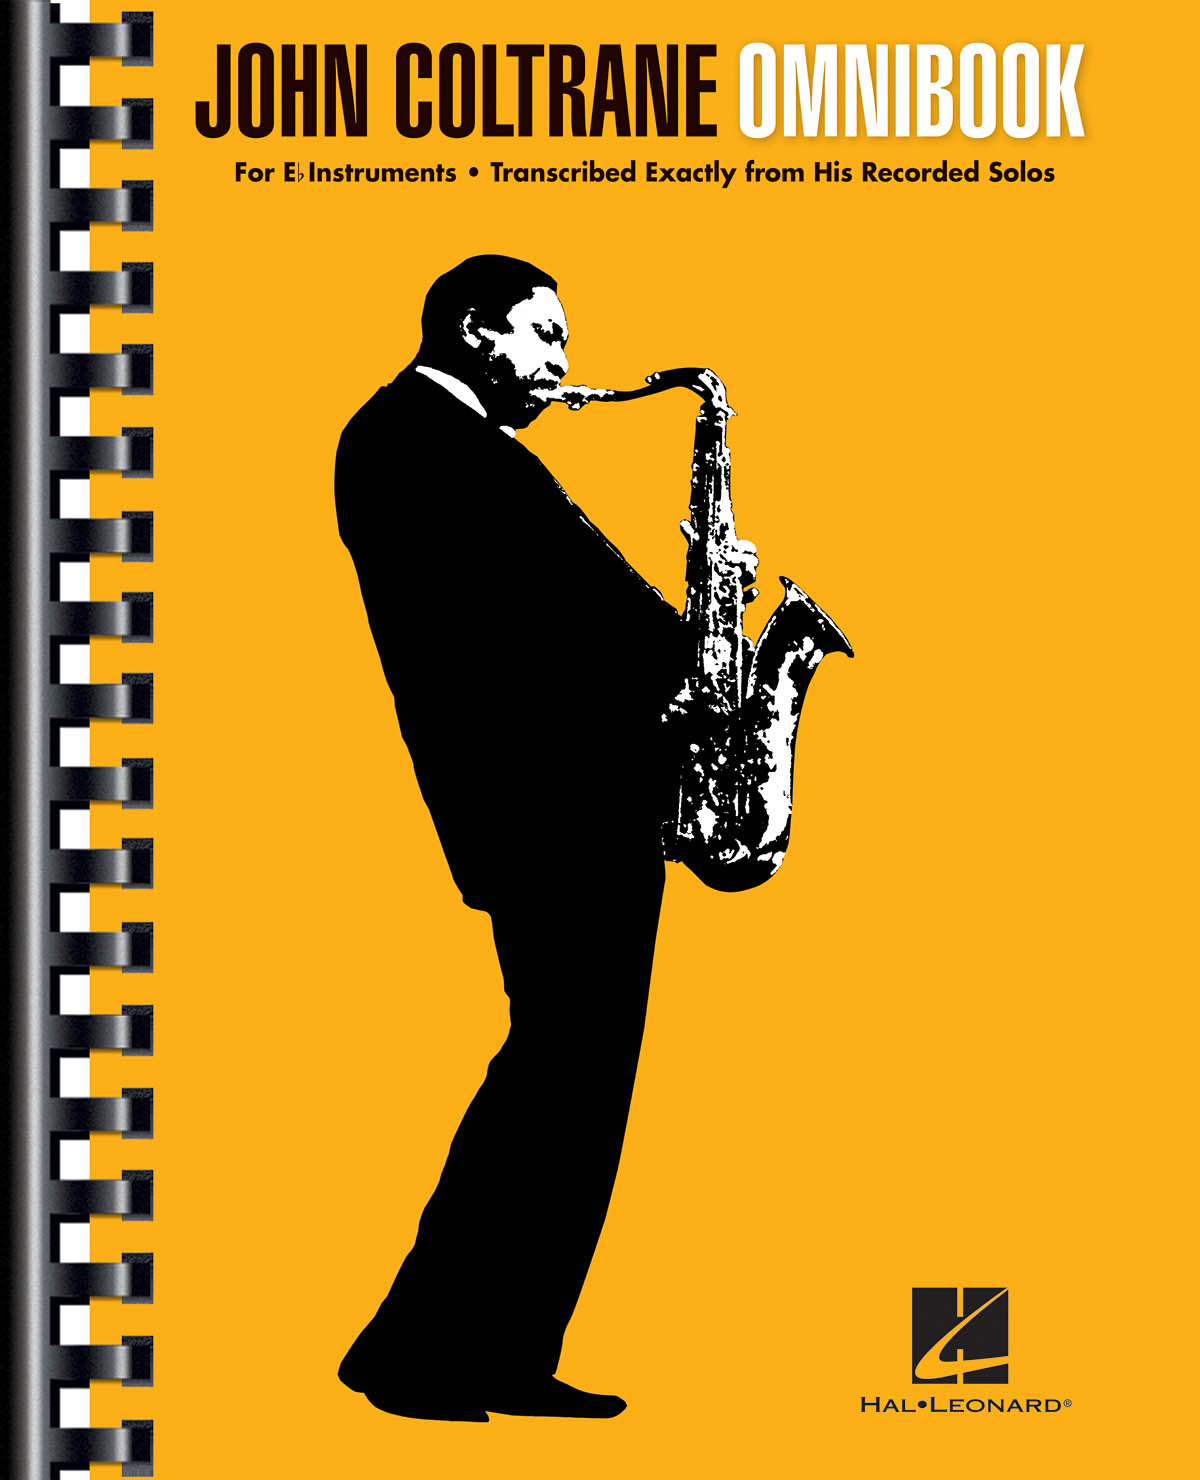 John Coltrane - Omnibook - For E-flat Instruments - noty v různých laděních